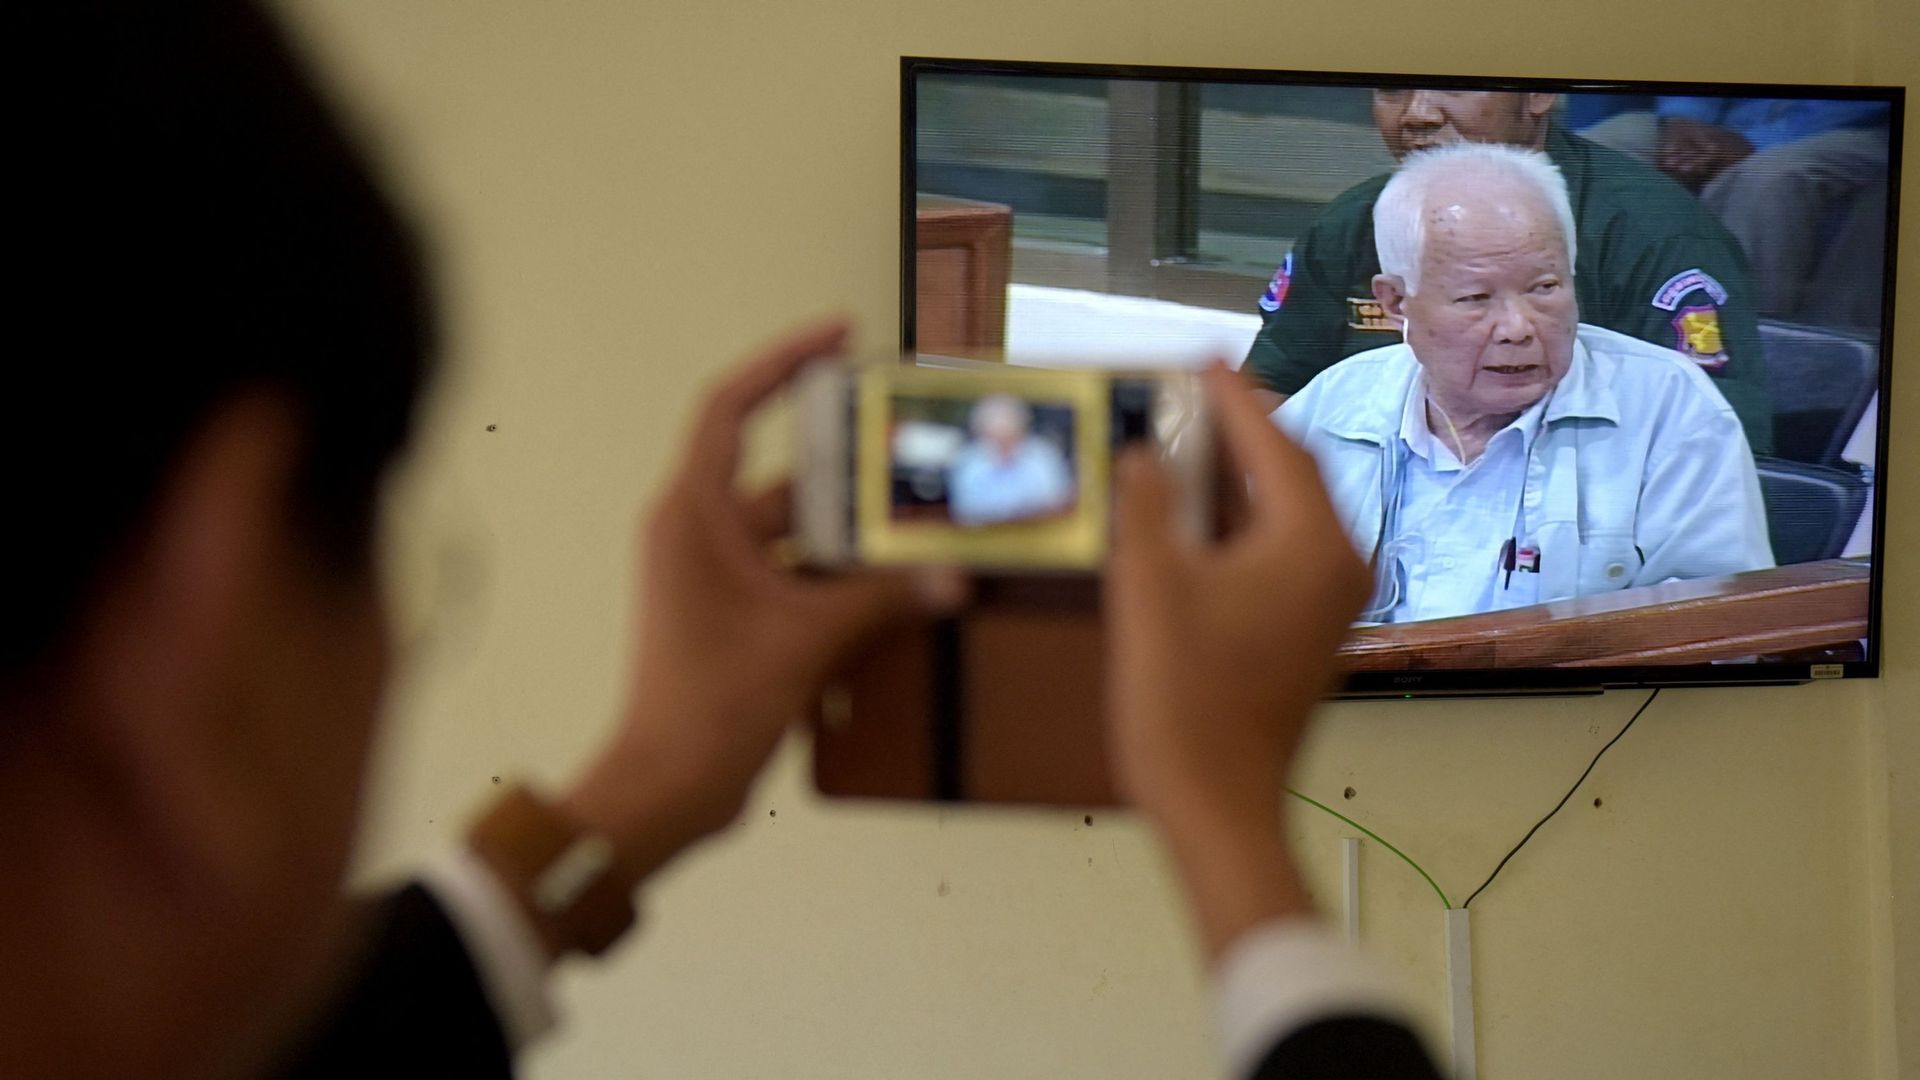 Photo d'archive prise le 23 juin 2017, une photo de l'ancien dirigeant khmer rouge Khieu Samphan alors que son image est diffusée sur un flux vidéo en direct pendant les déclarations finales de son procès aux ECCC à Phnom Penh.